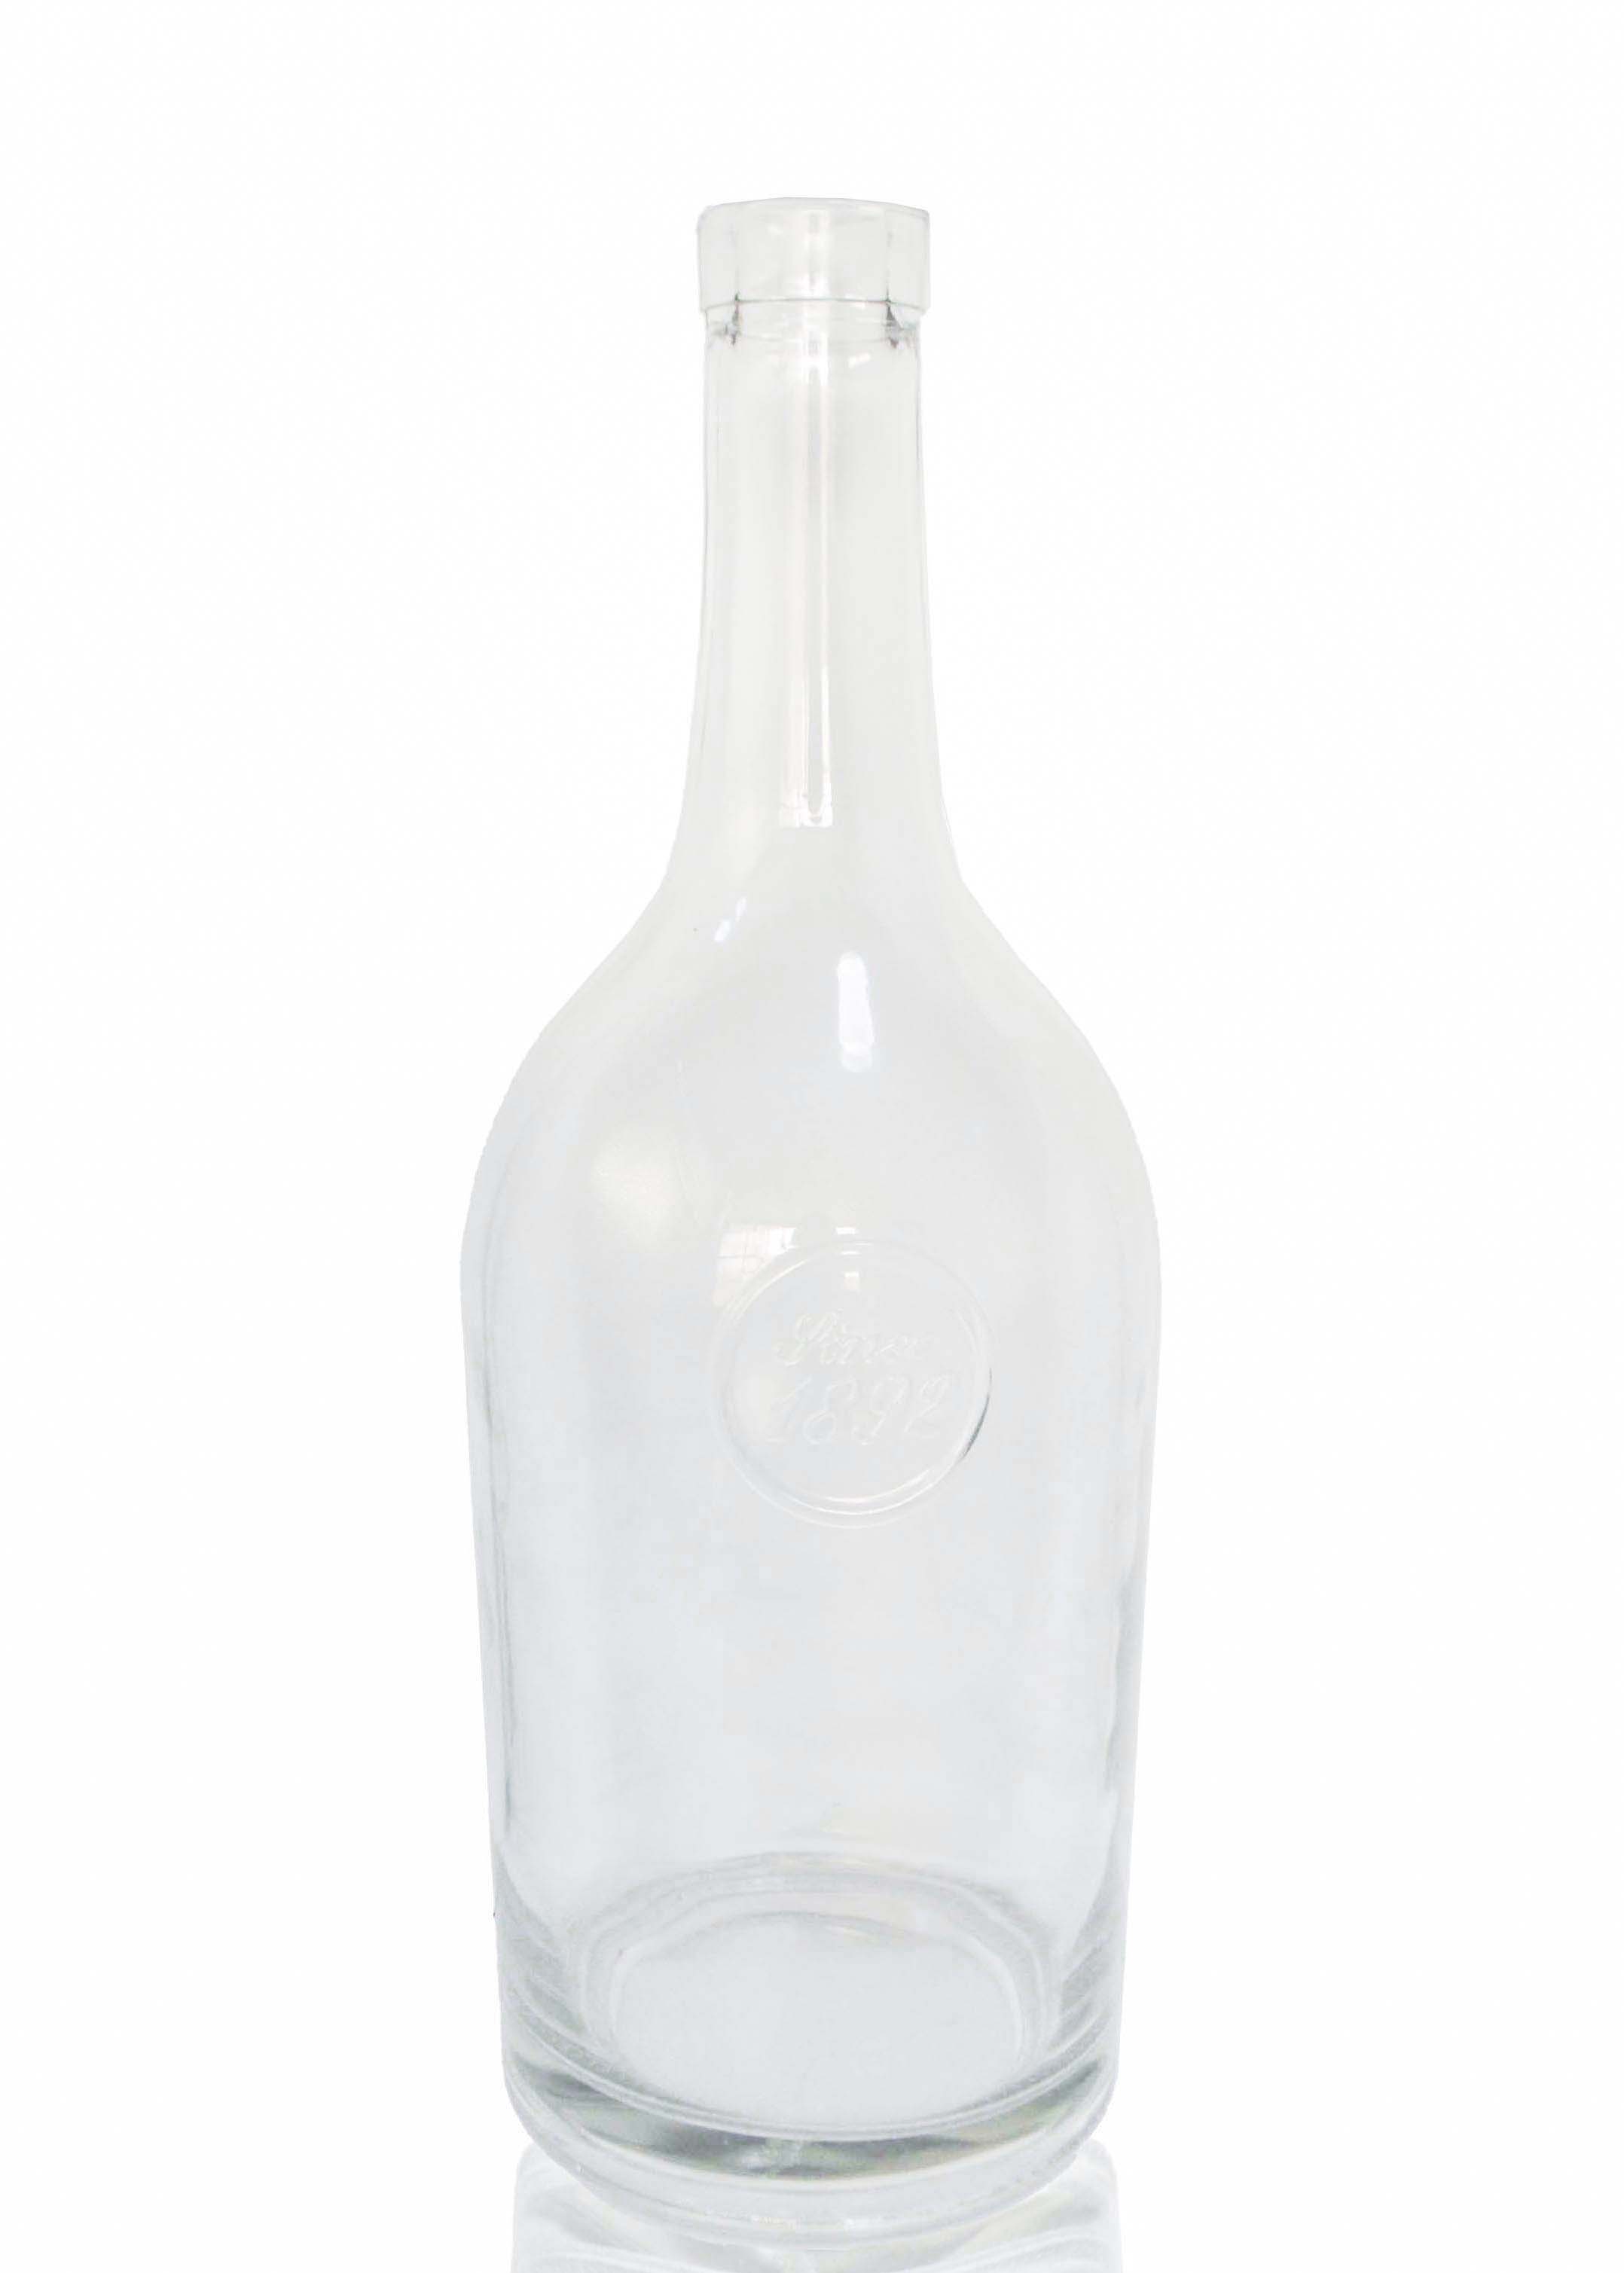 1000ml glass bottles clear glass wine bottle 